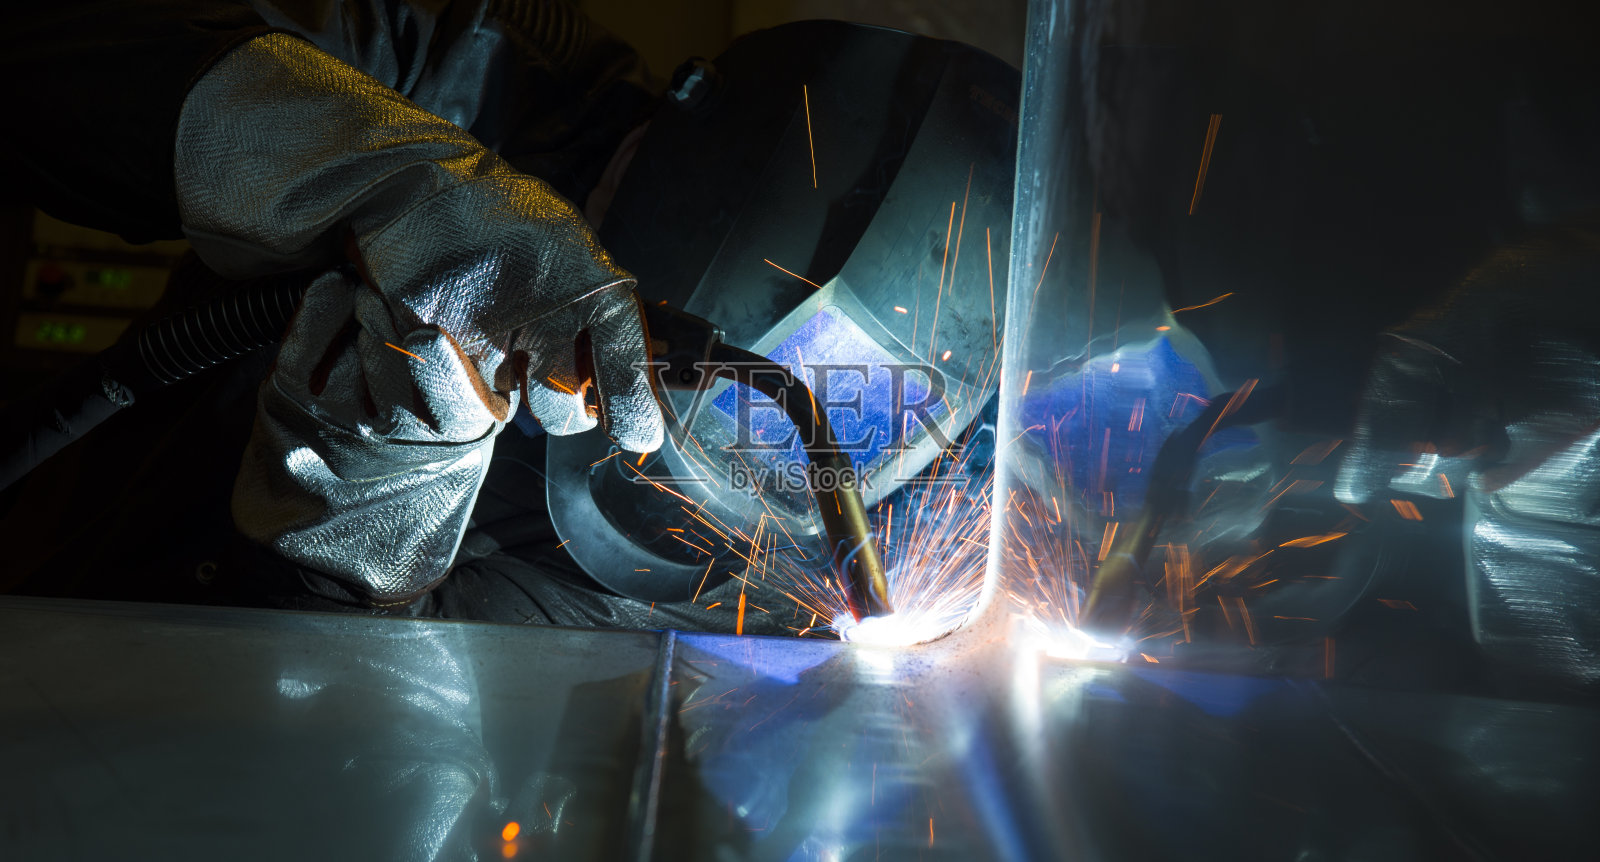 工厂工业用钢焊机照片摄影图片